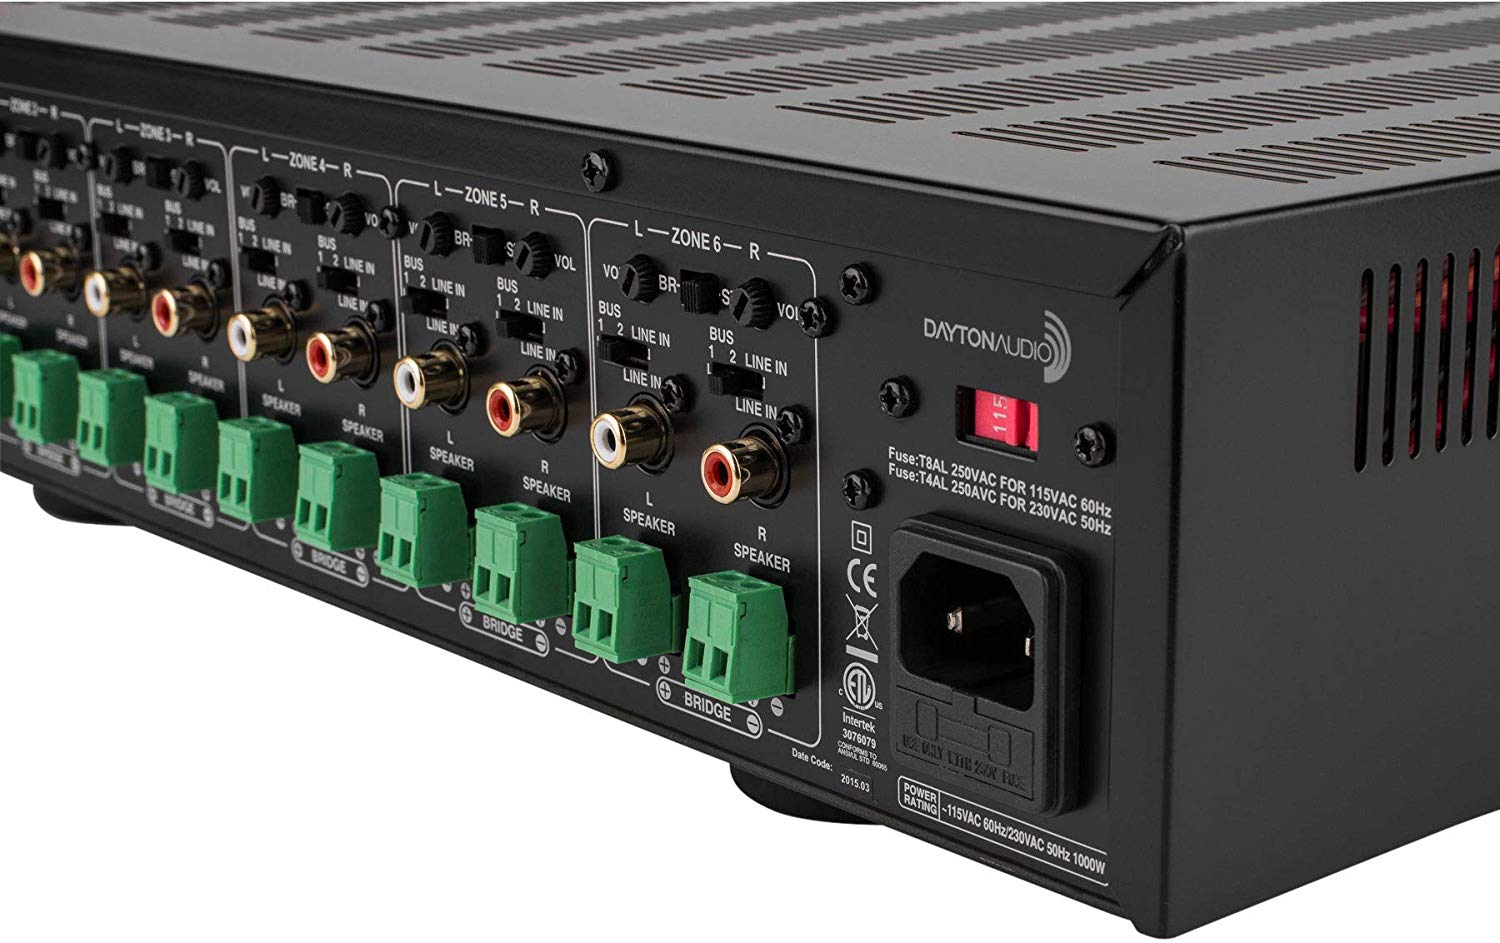 [Open Box] Dayton Audio MA1240a Multi-Zone 12 Channel Amplifier